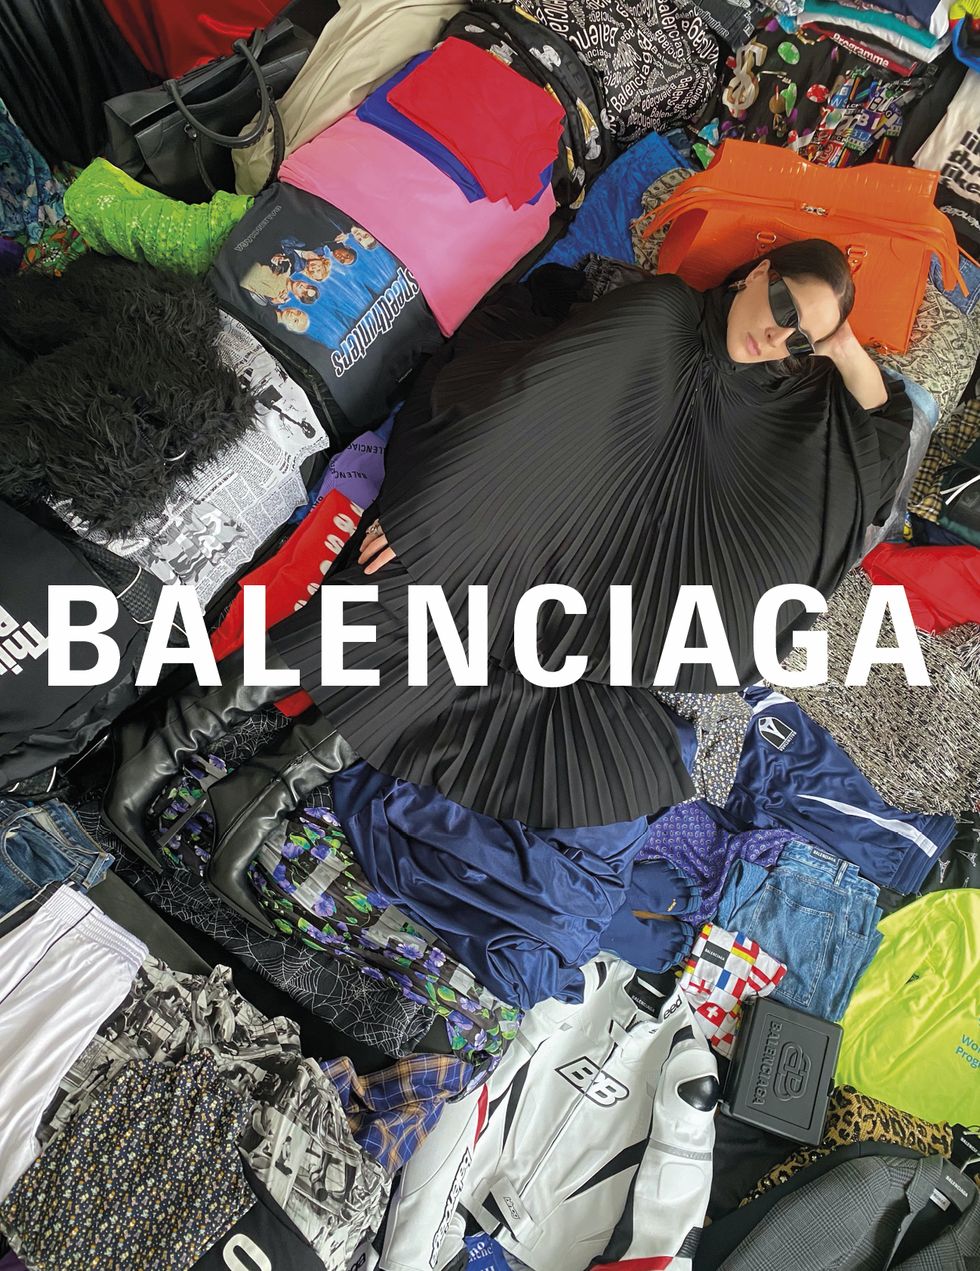 廣告大片總是創意無限的balenciaga，在正值居家隔離期間邀請藝術家eliza douglas將新一季的產品放在它們最終會出現的地方，拍攝出如社群媒體上常出現的風格照片。有發現neo classic包在哪嗎？